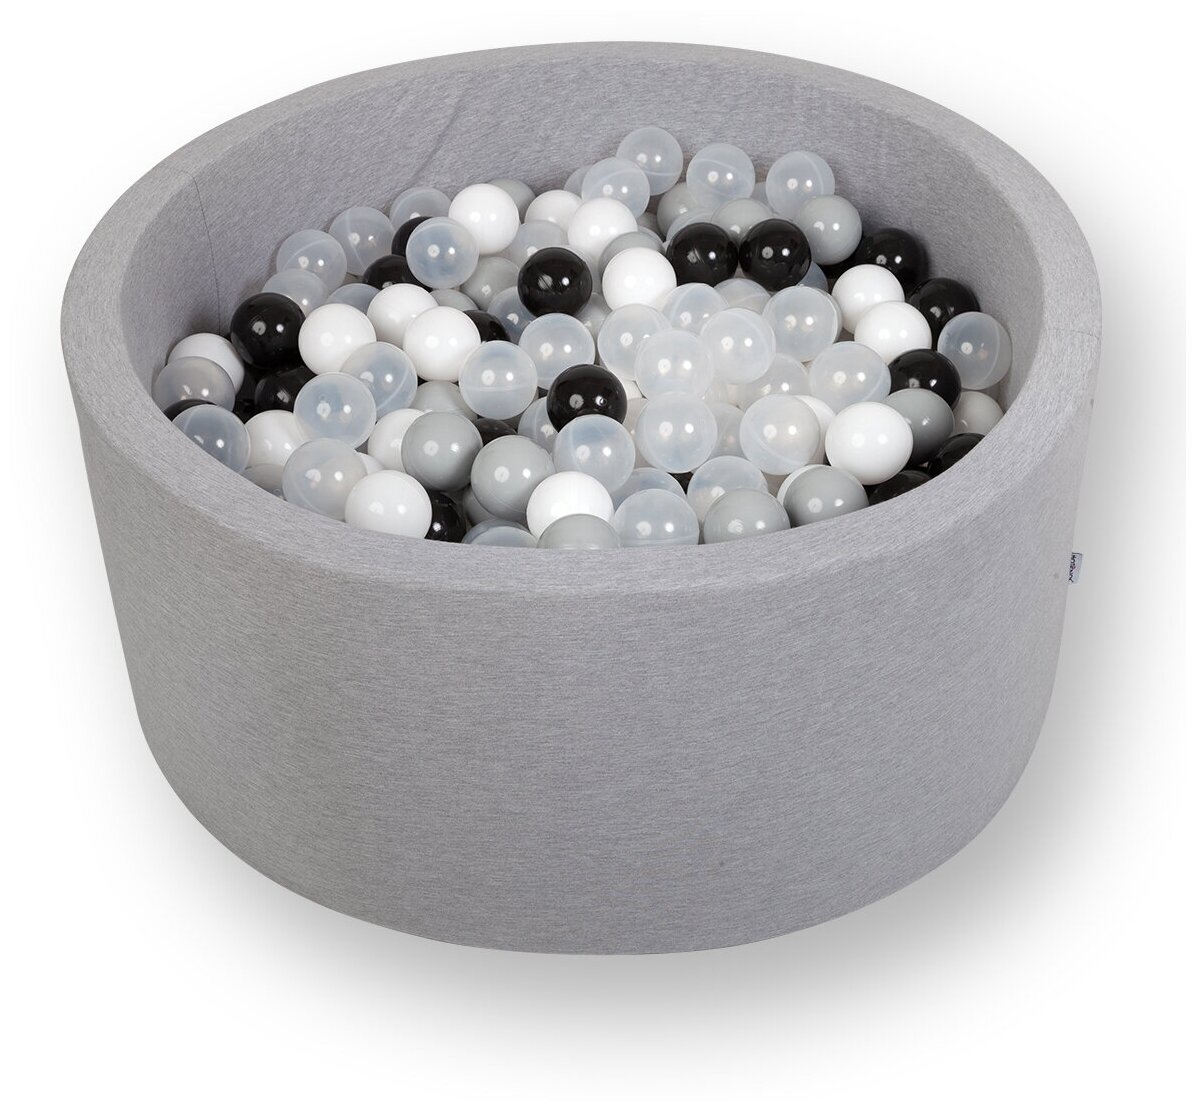 Сухой игровой бассейн “Морская пена” серый выс. 40см. с 200 шарами в комплекте: белый, черный, серый, прозрачный - фотография № 6